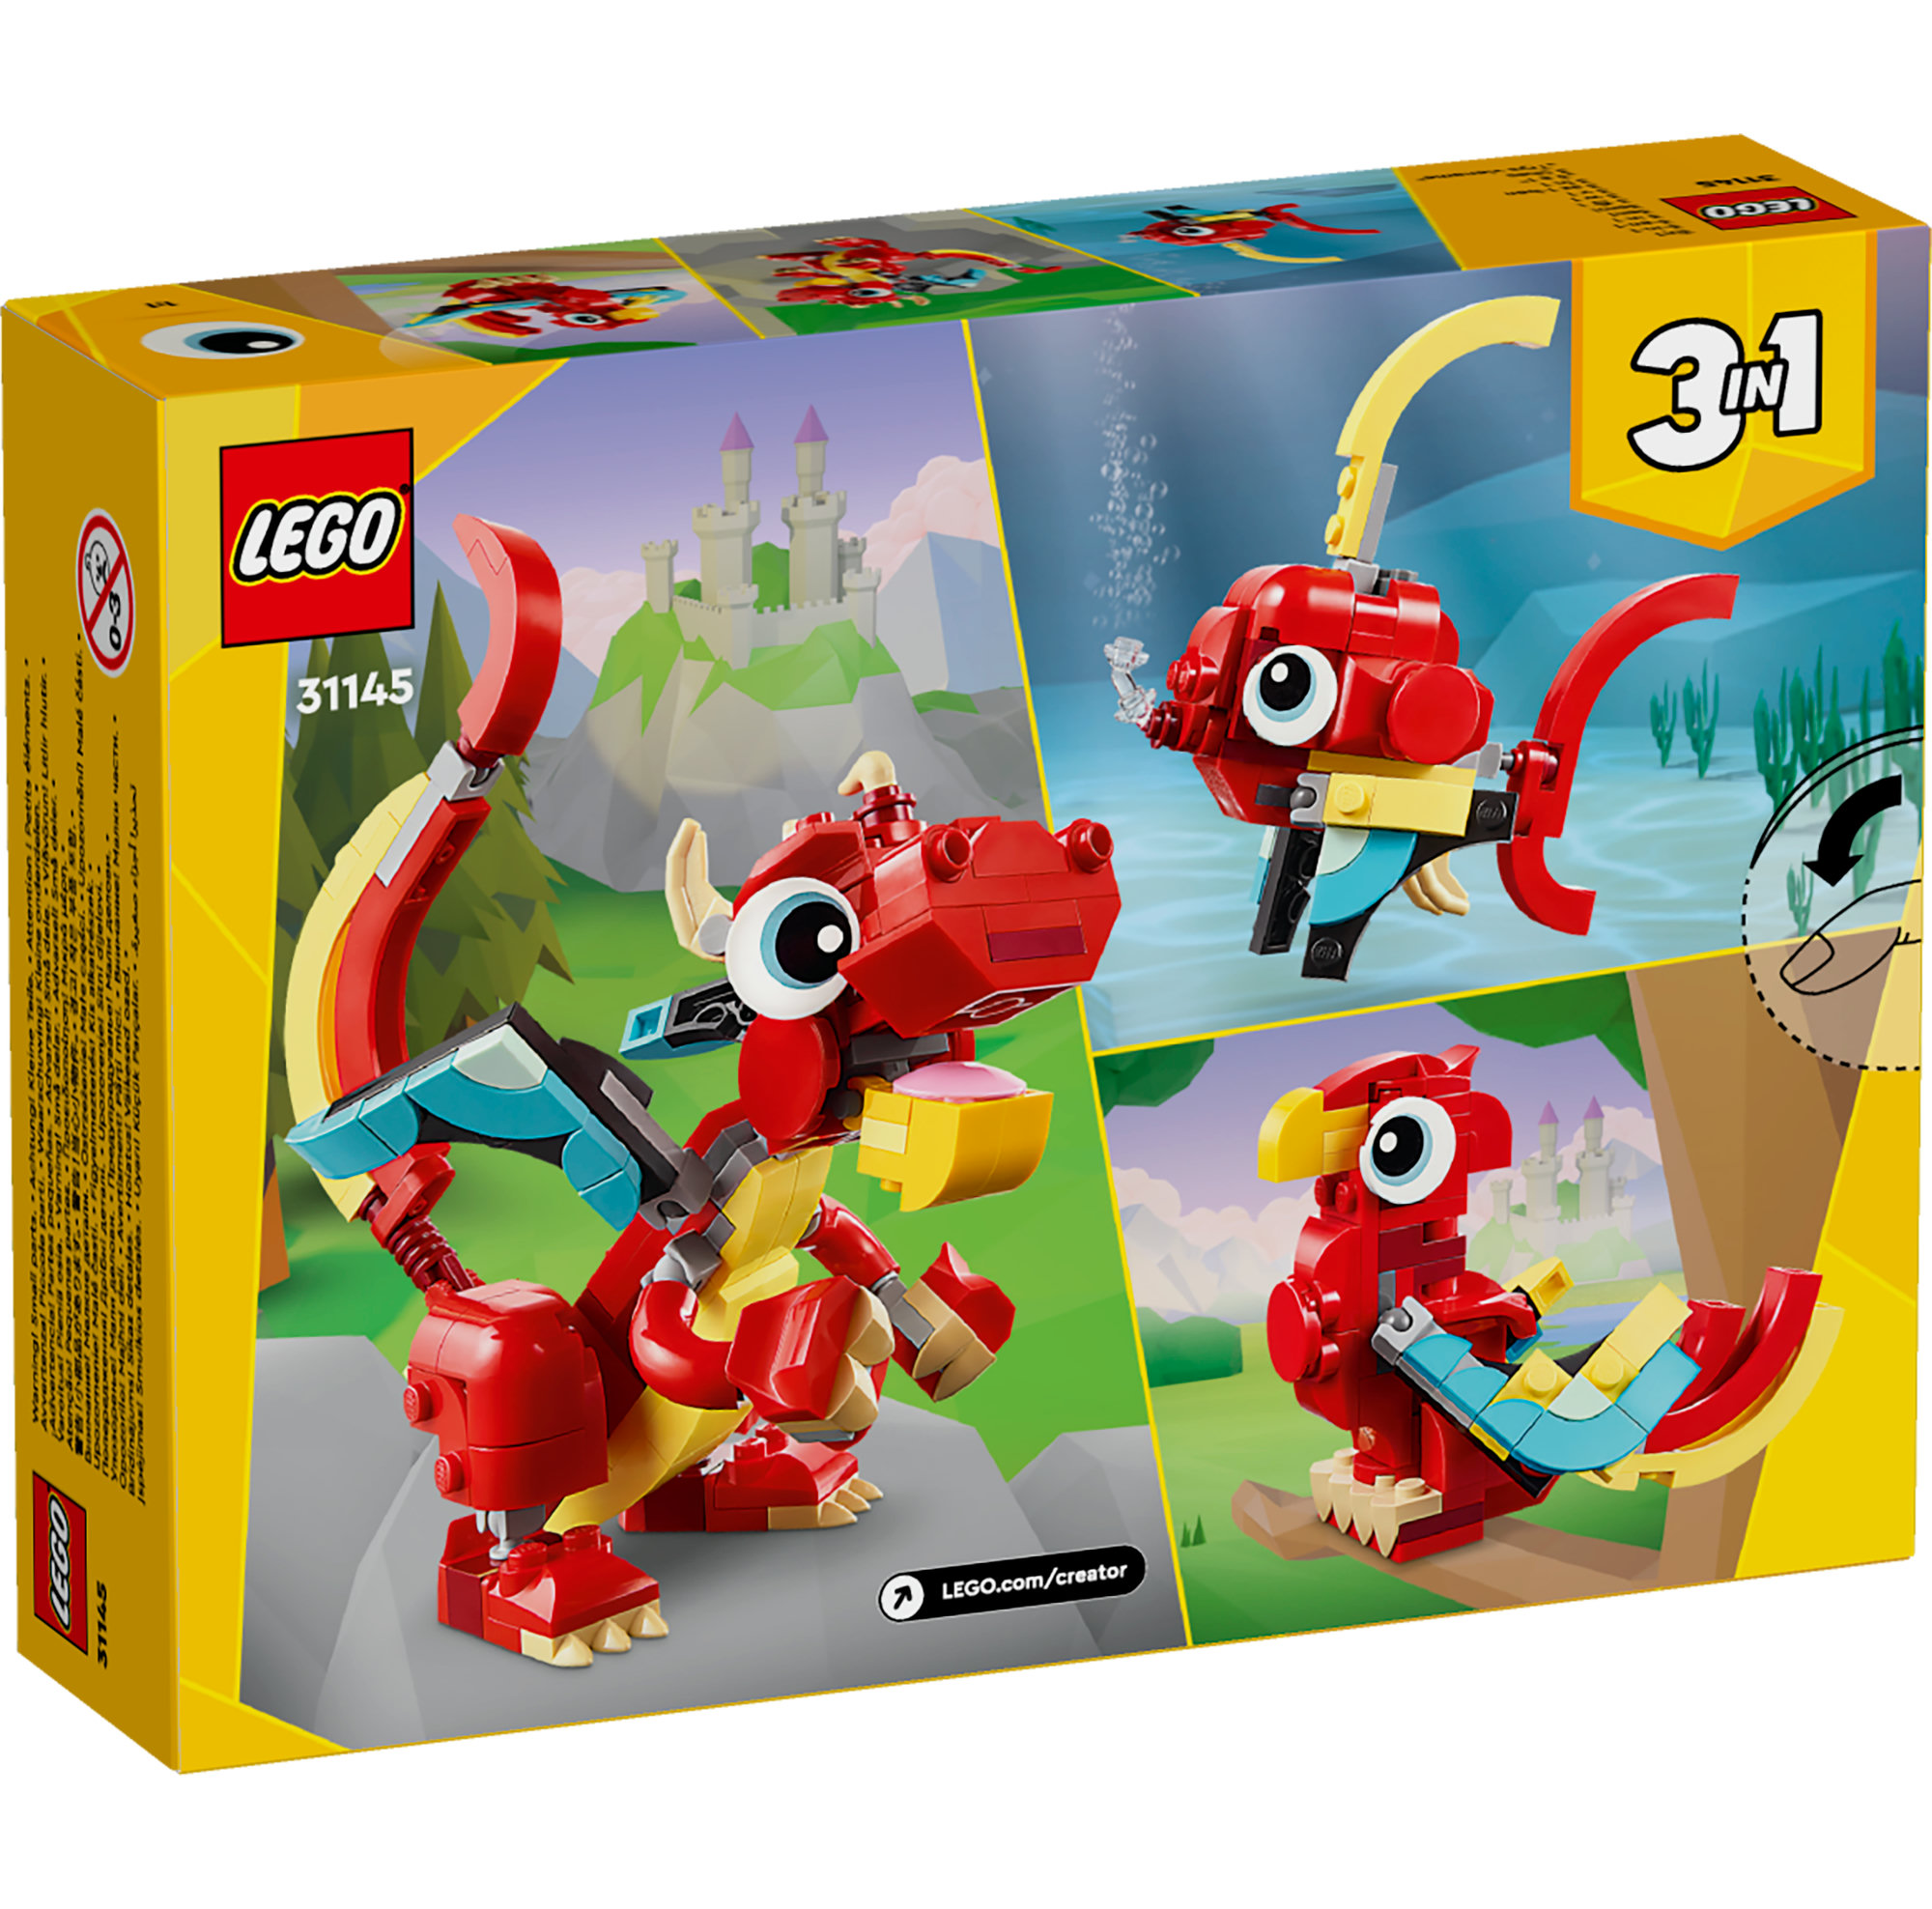 LEGO CREATOR 31145 Đồ chơi lắp ráp Rồng đỏ may mắn (149 chi tiết)